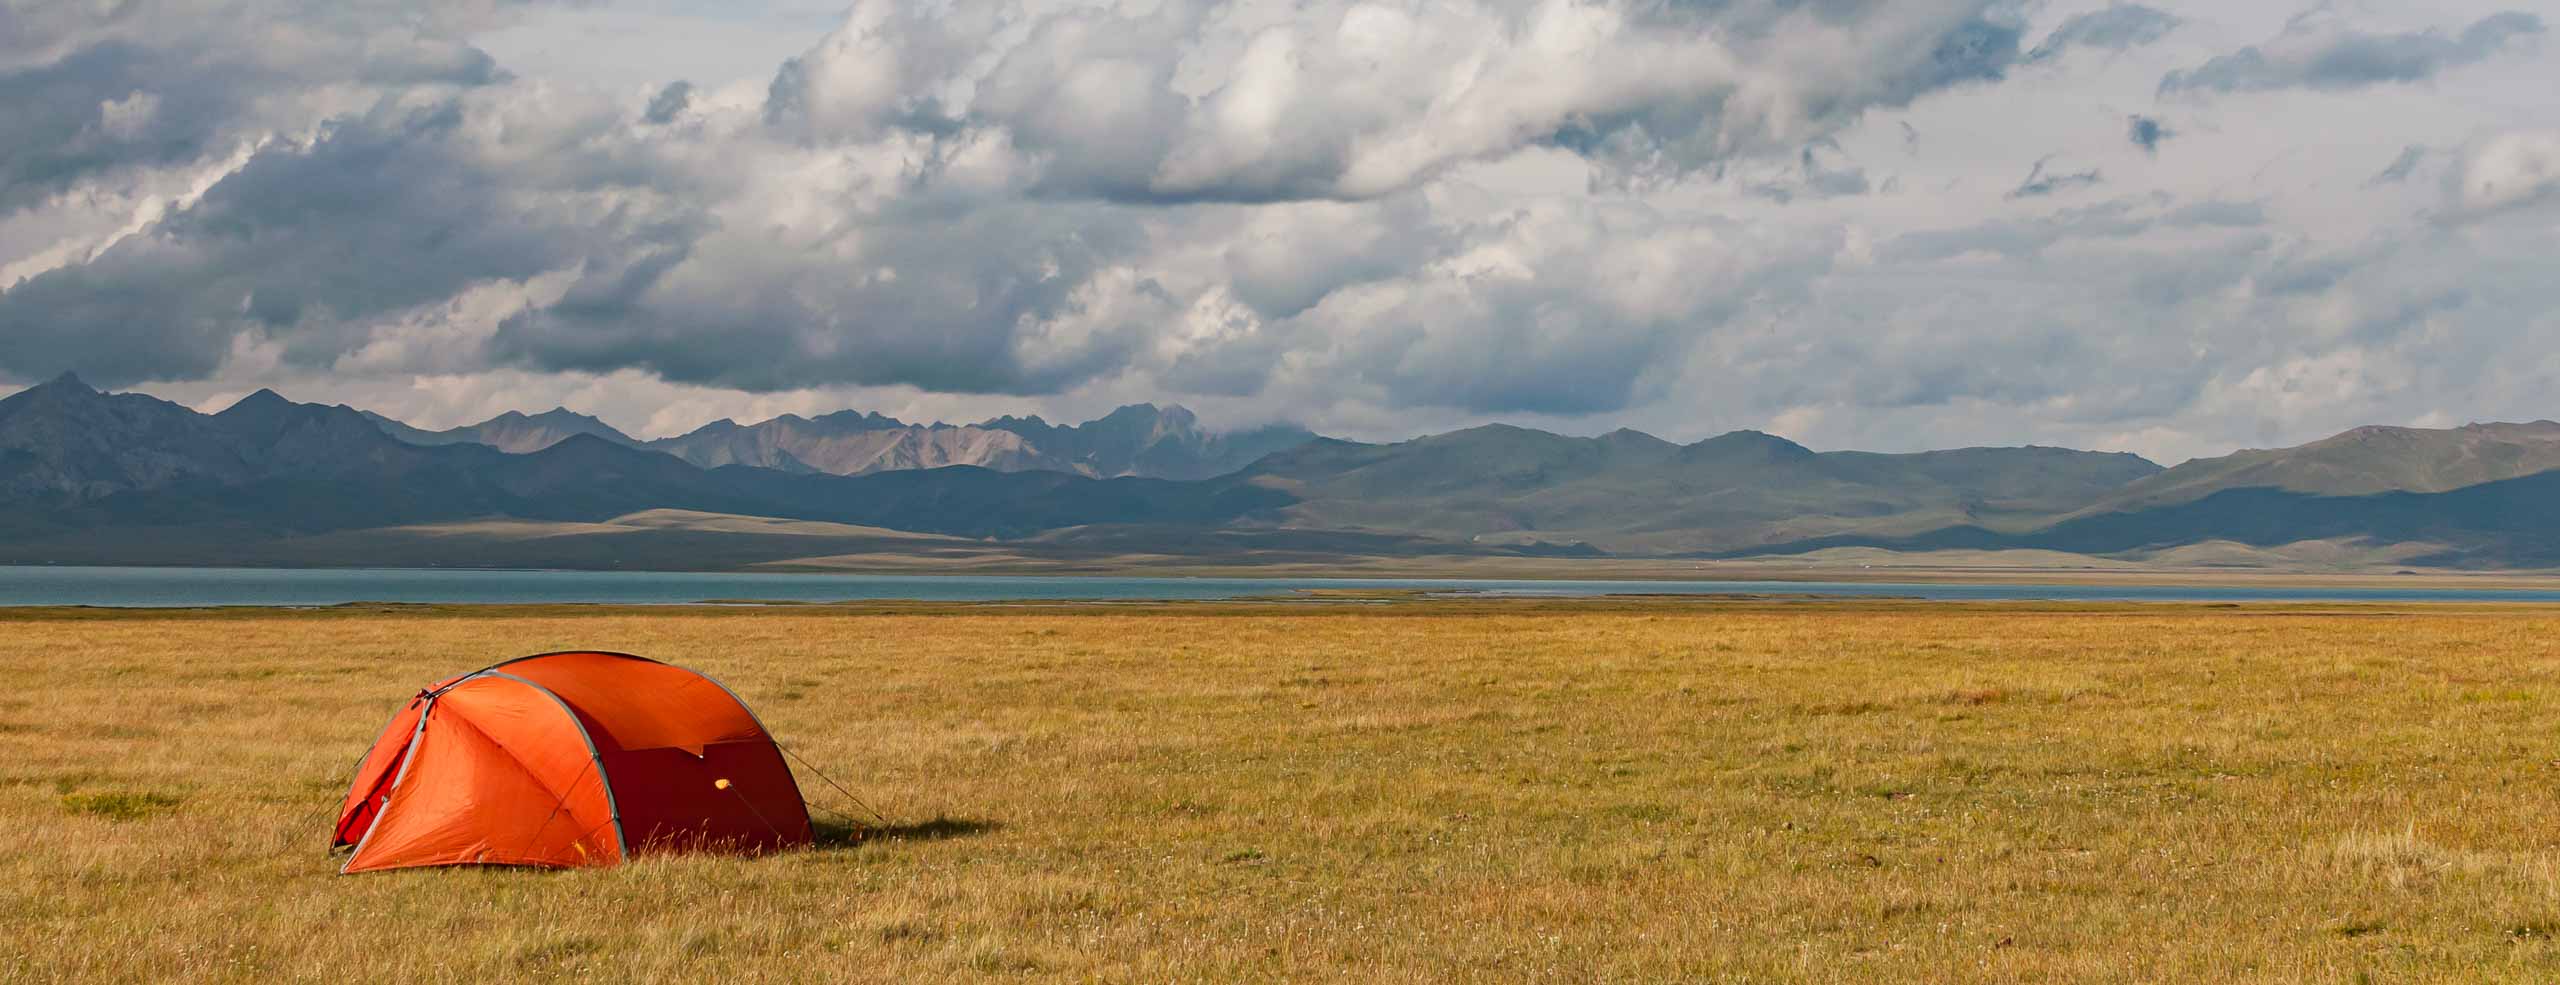 Bivouac dans une nature immense en Asie Centrale - Une tente rouge dans les monts Tian Shan, près du lac de Song Kul, Voyage au Kyrgyzstan, Asie Centrale